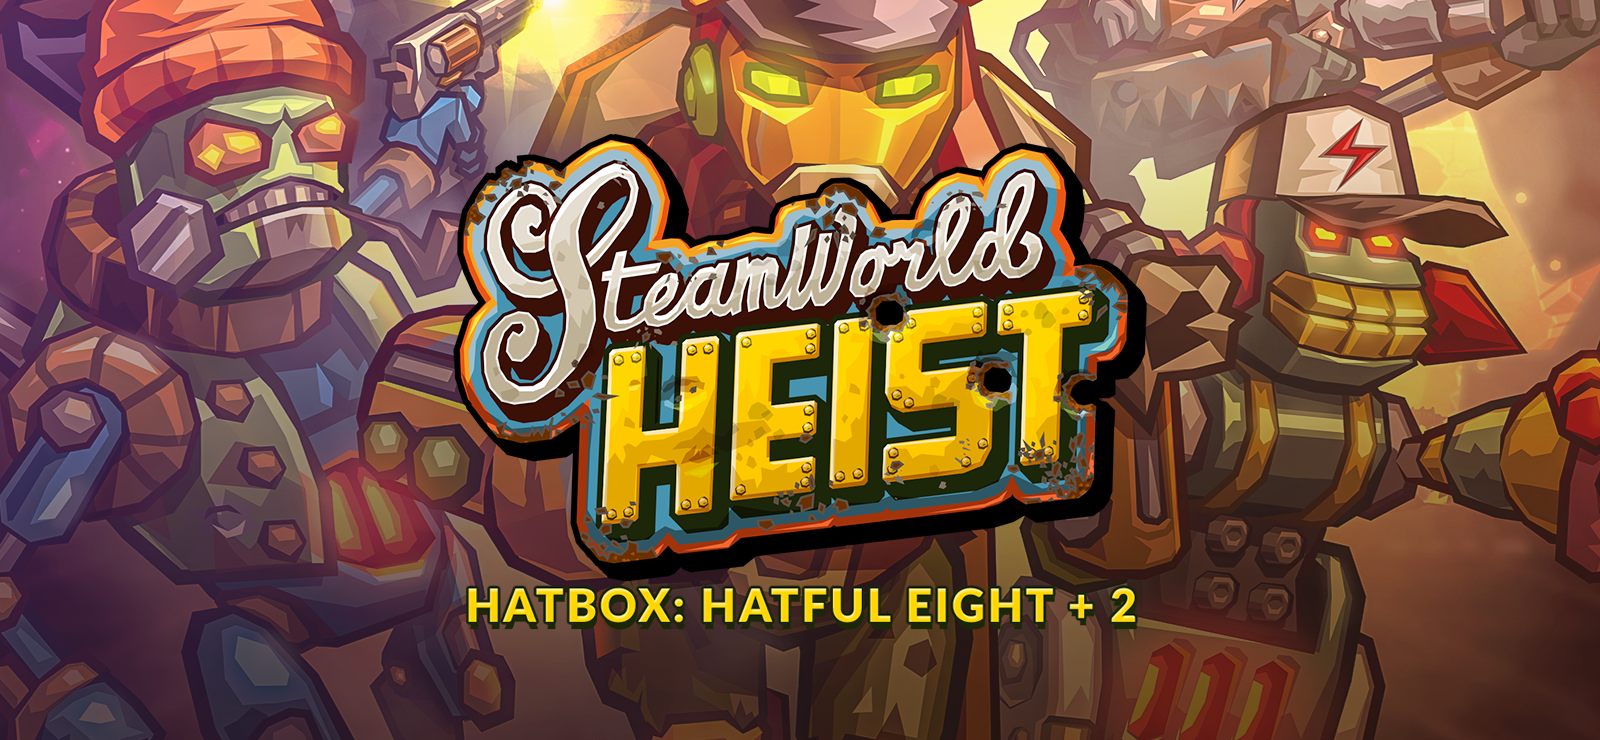 SteamWorld Heist - Hatbox: Hatful Eight + 2